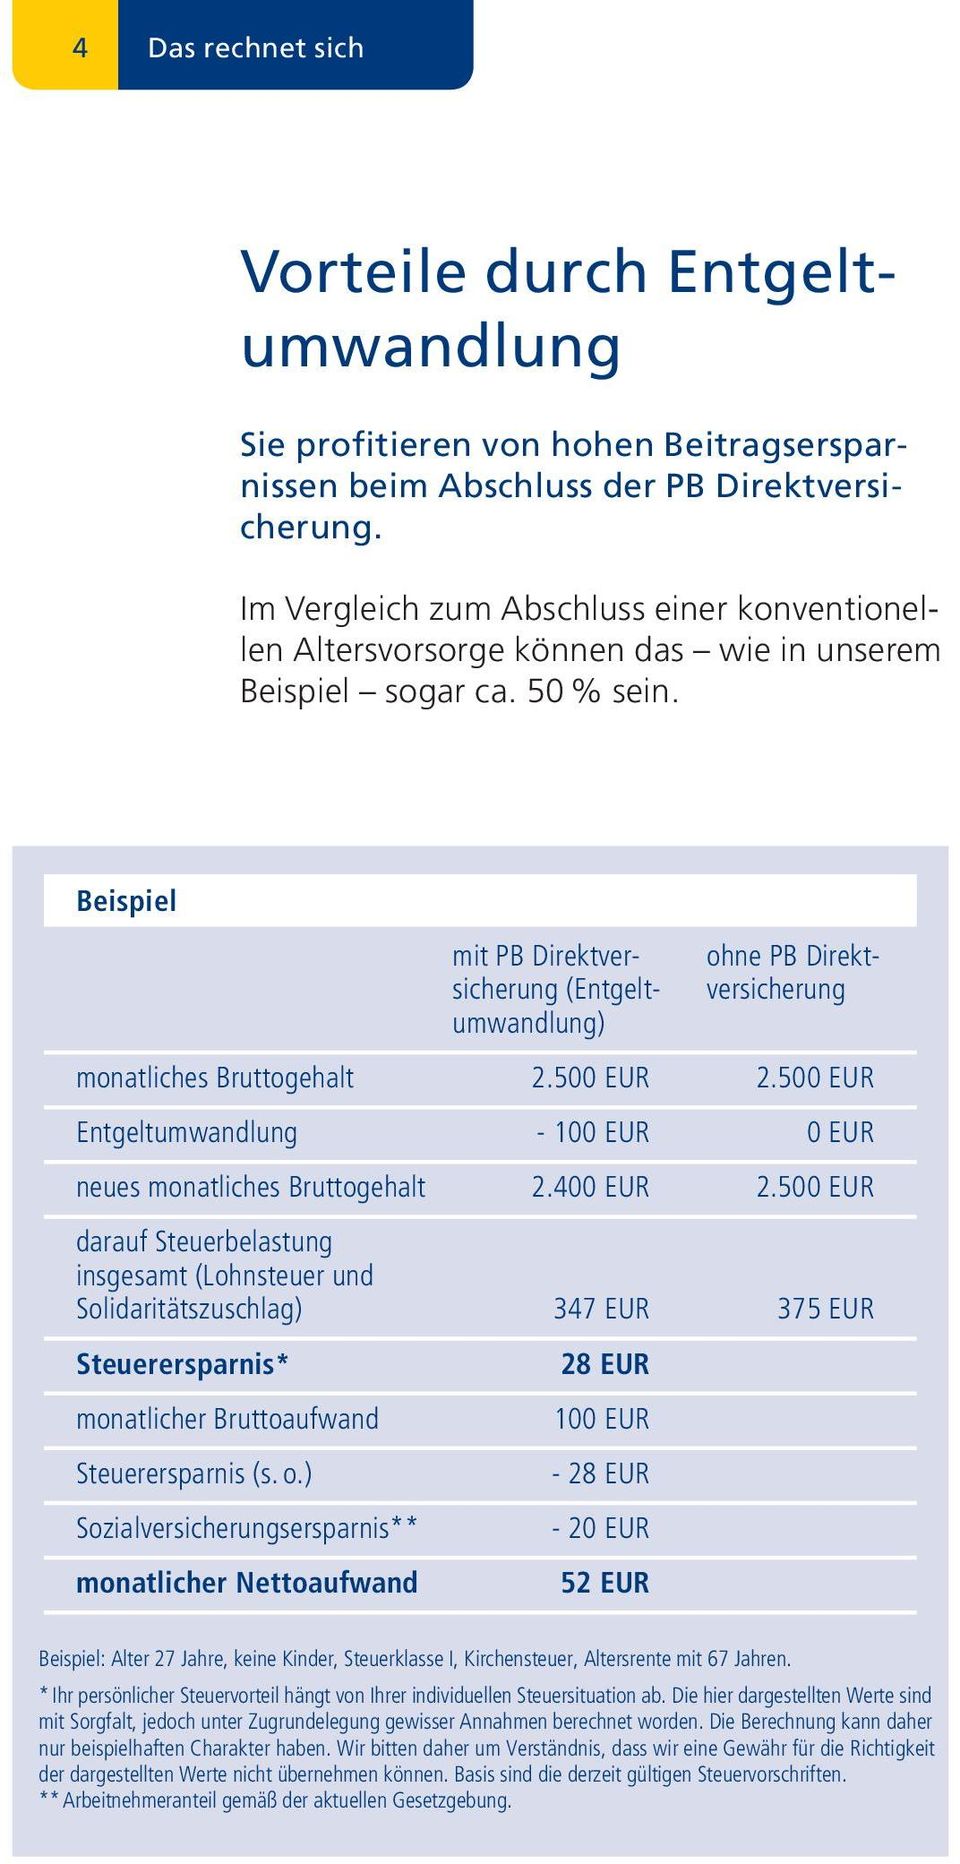 Beispiel mit PB Direktver - sicherung (Entgeltumwandlung) ohne PB Direktversicherung monatliches Bruttogehalt 2.500 EUR 2.500 EUR Entgeltumwandlung - 100 EUR 0 EUR neues monatliches Bruttogehalt 2.